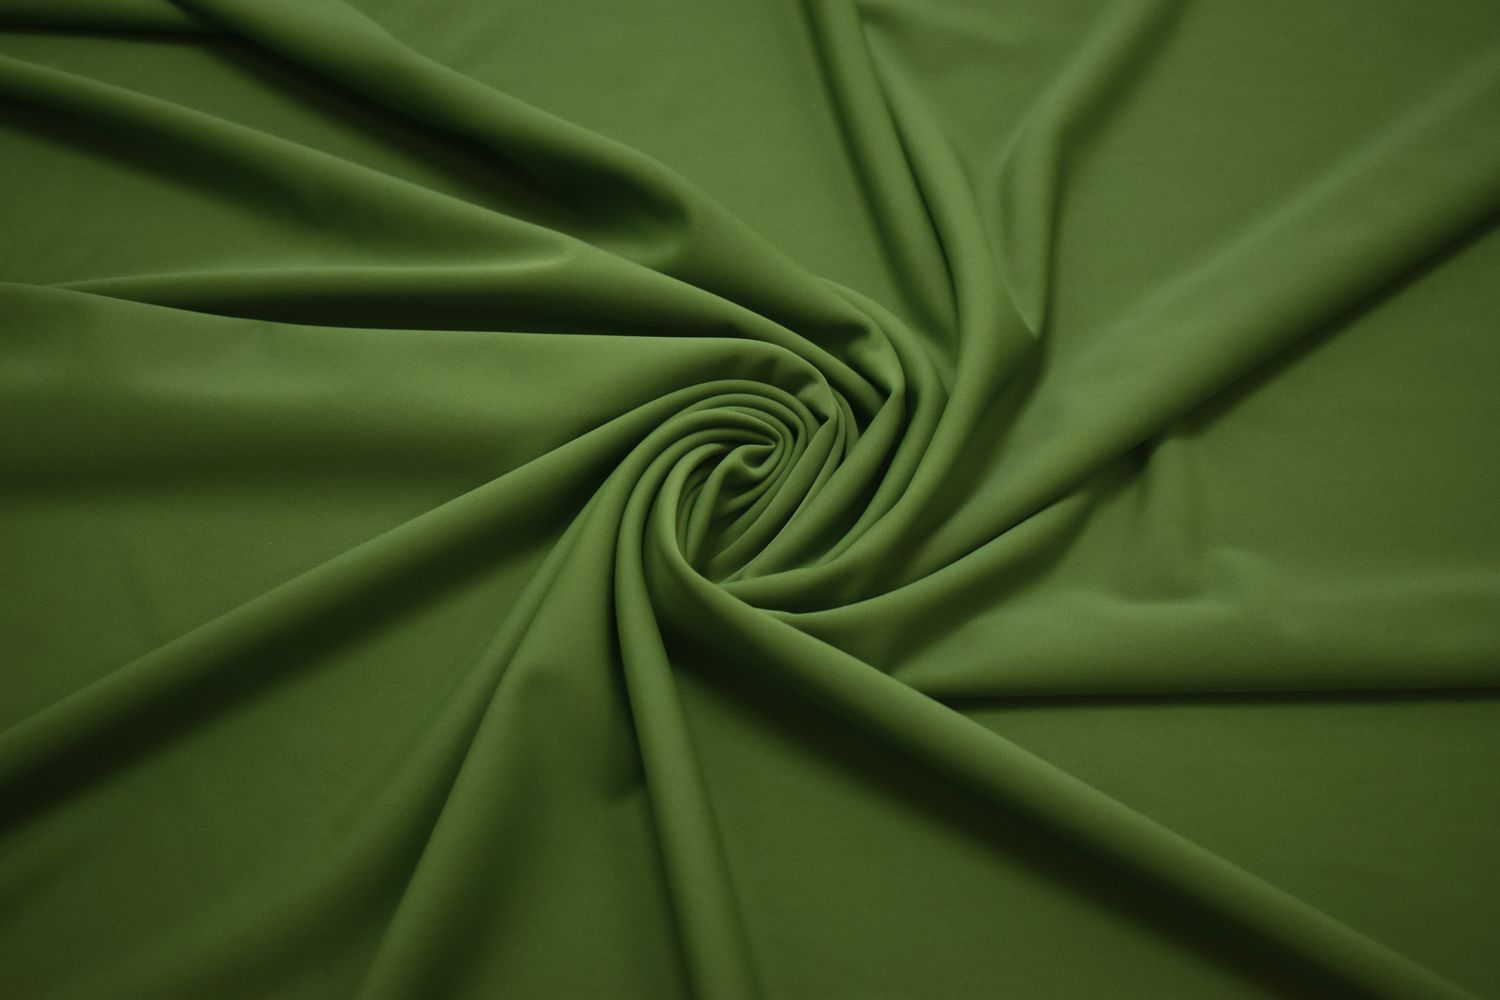 Бифлекс зеленого цвета W-126561